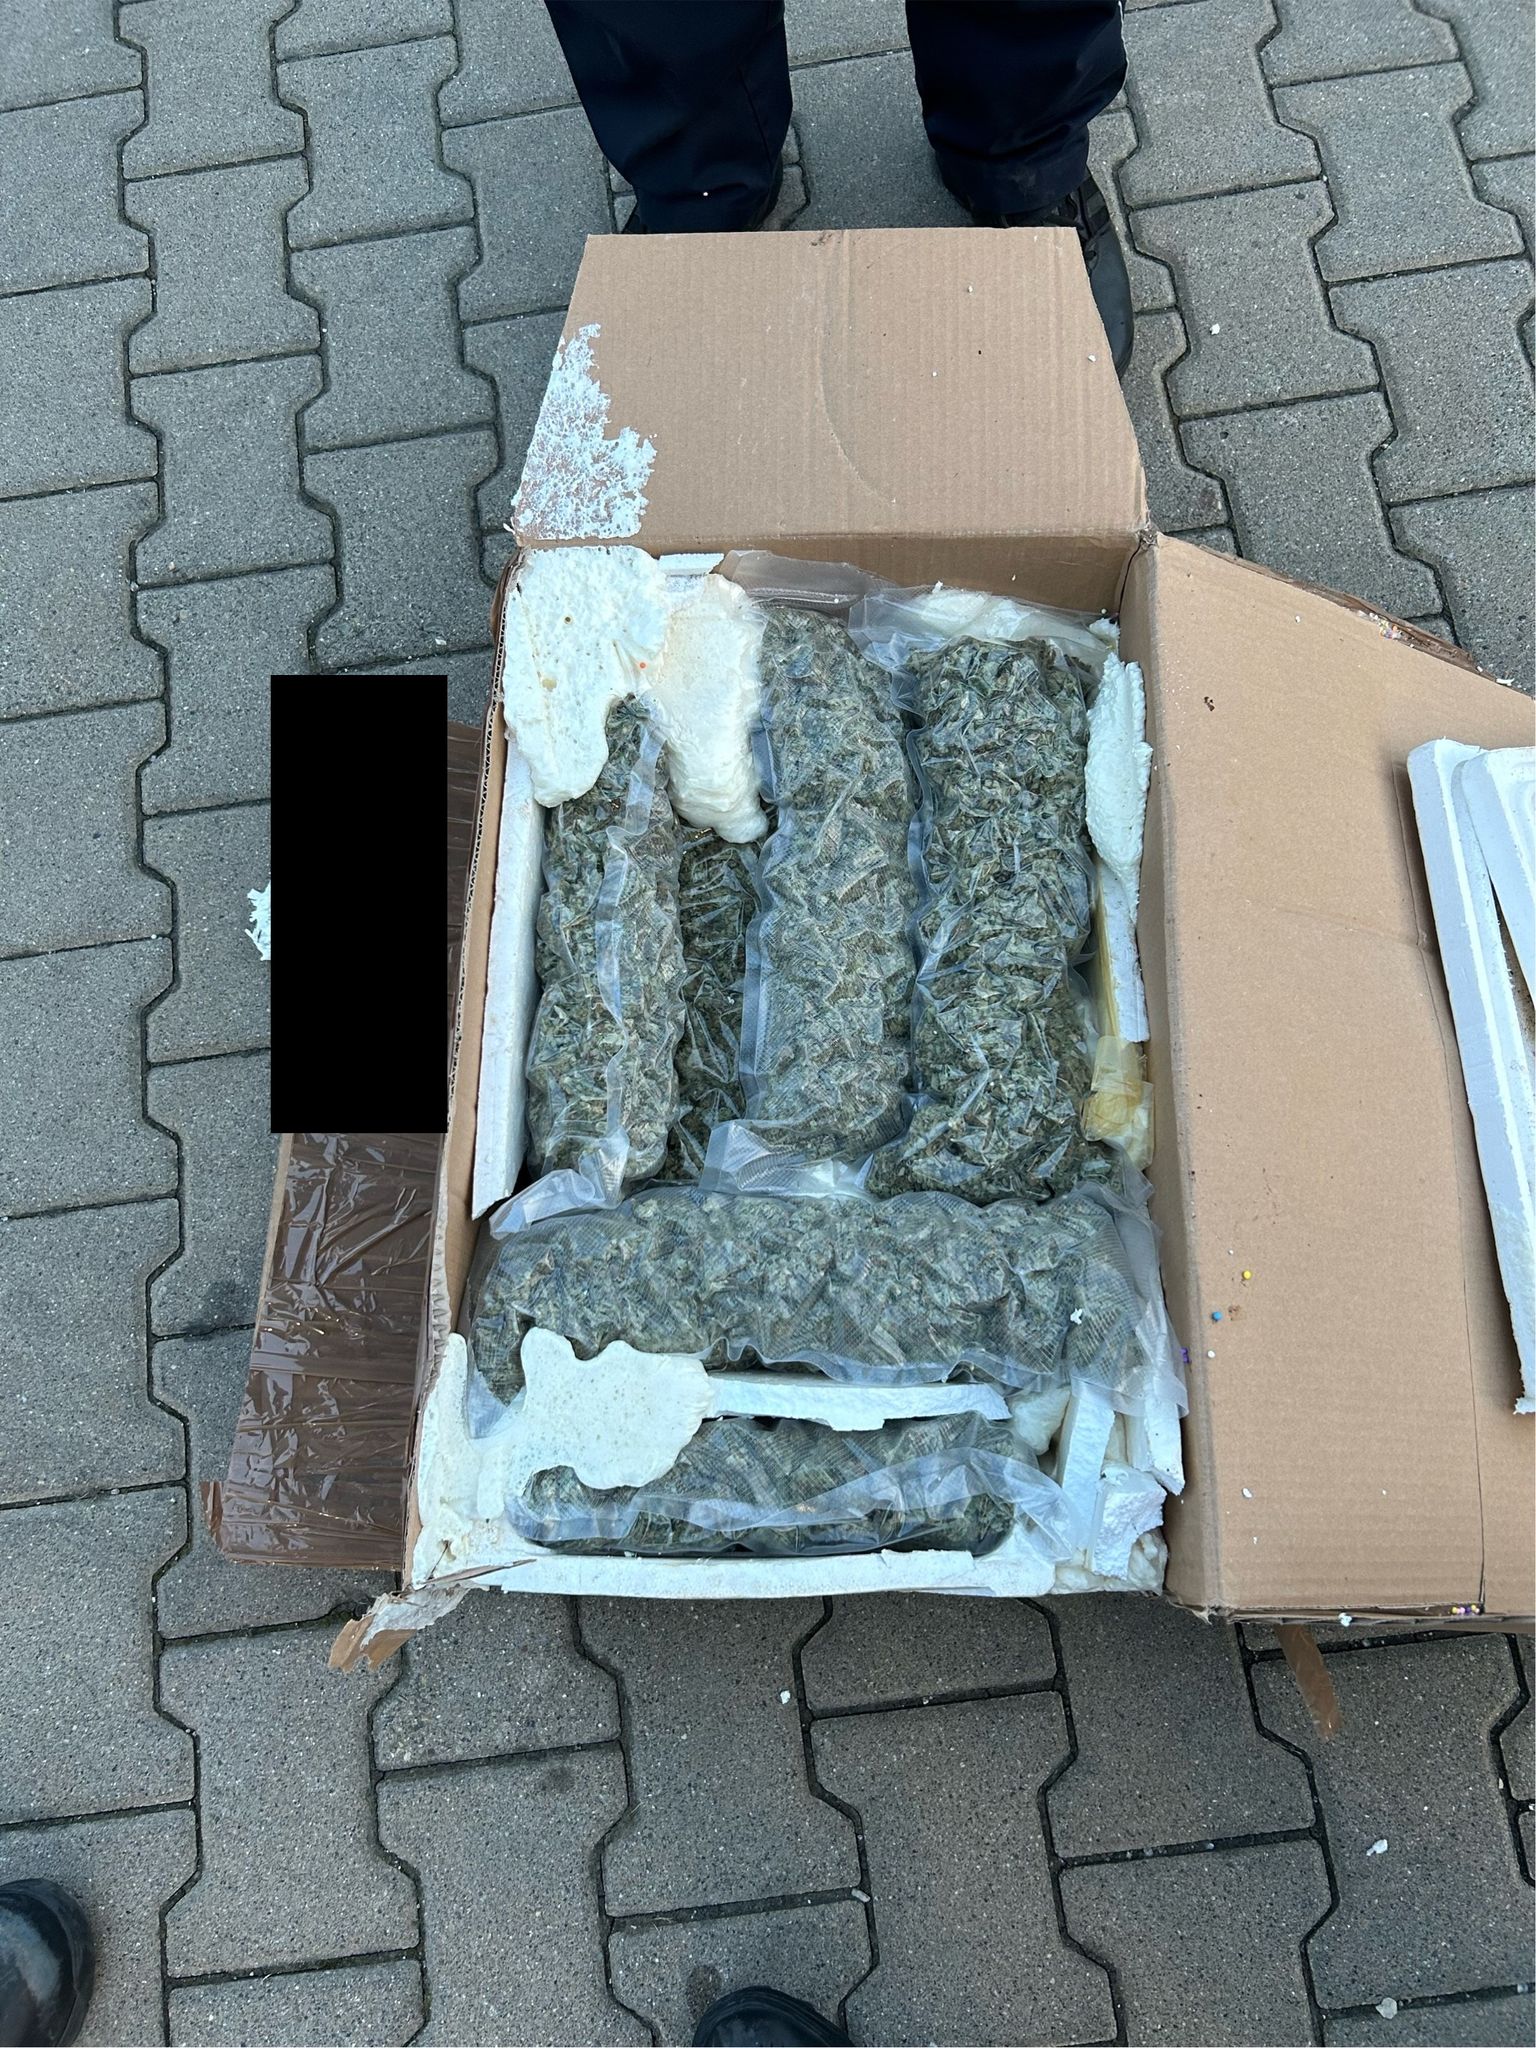 unbekannter wollte sich 1,6 kilogramm marihuana bestellen